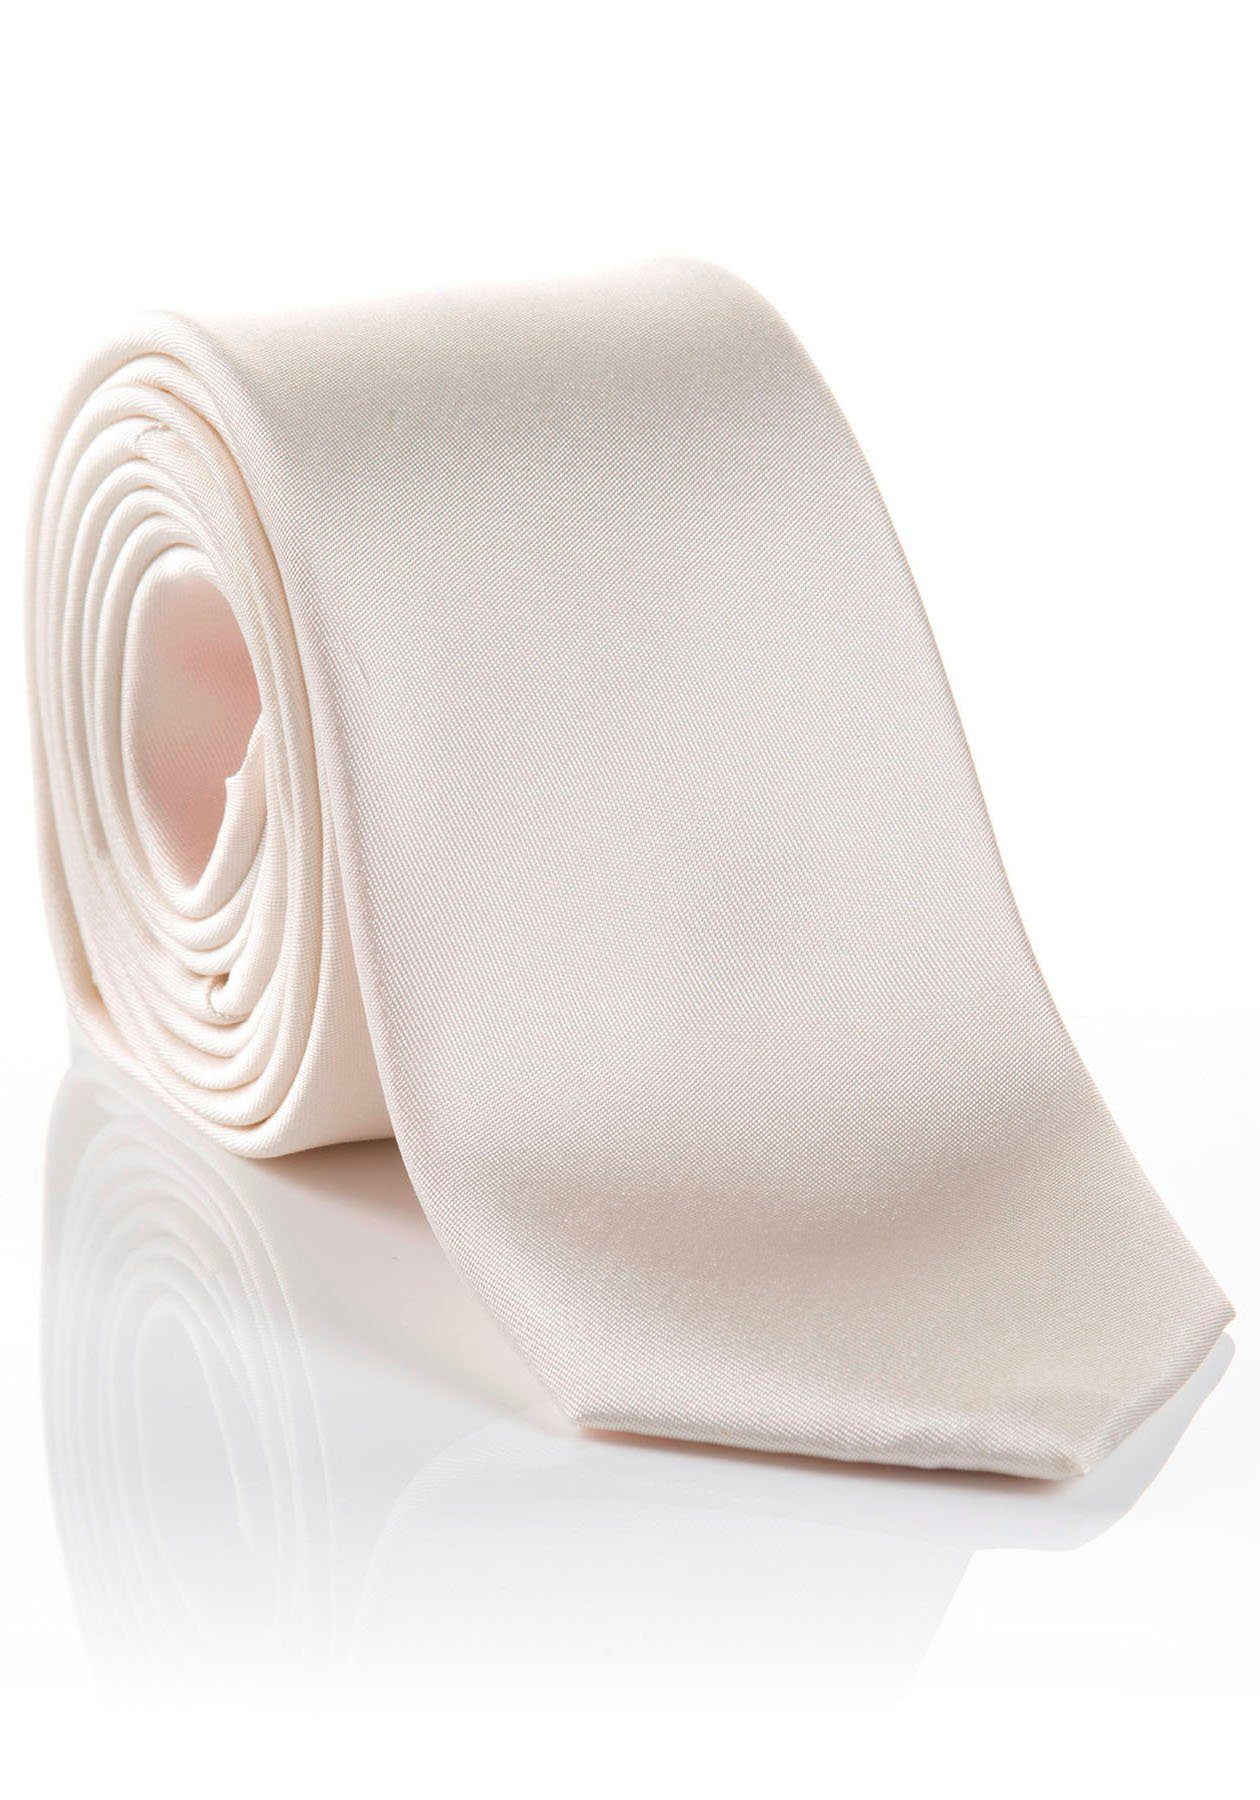 LIVIO verarbeitete hohem Seidenkrawatte MONTI mit Tragekomfort Hochwertig Krawatte